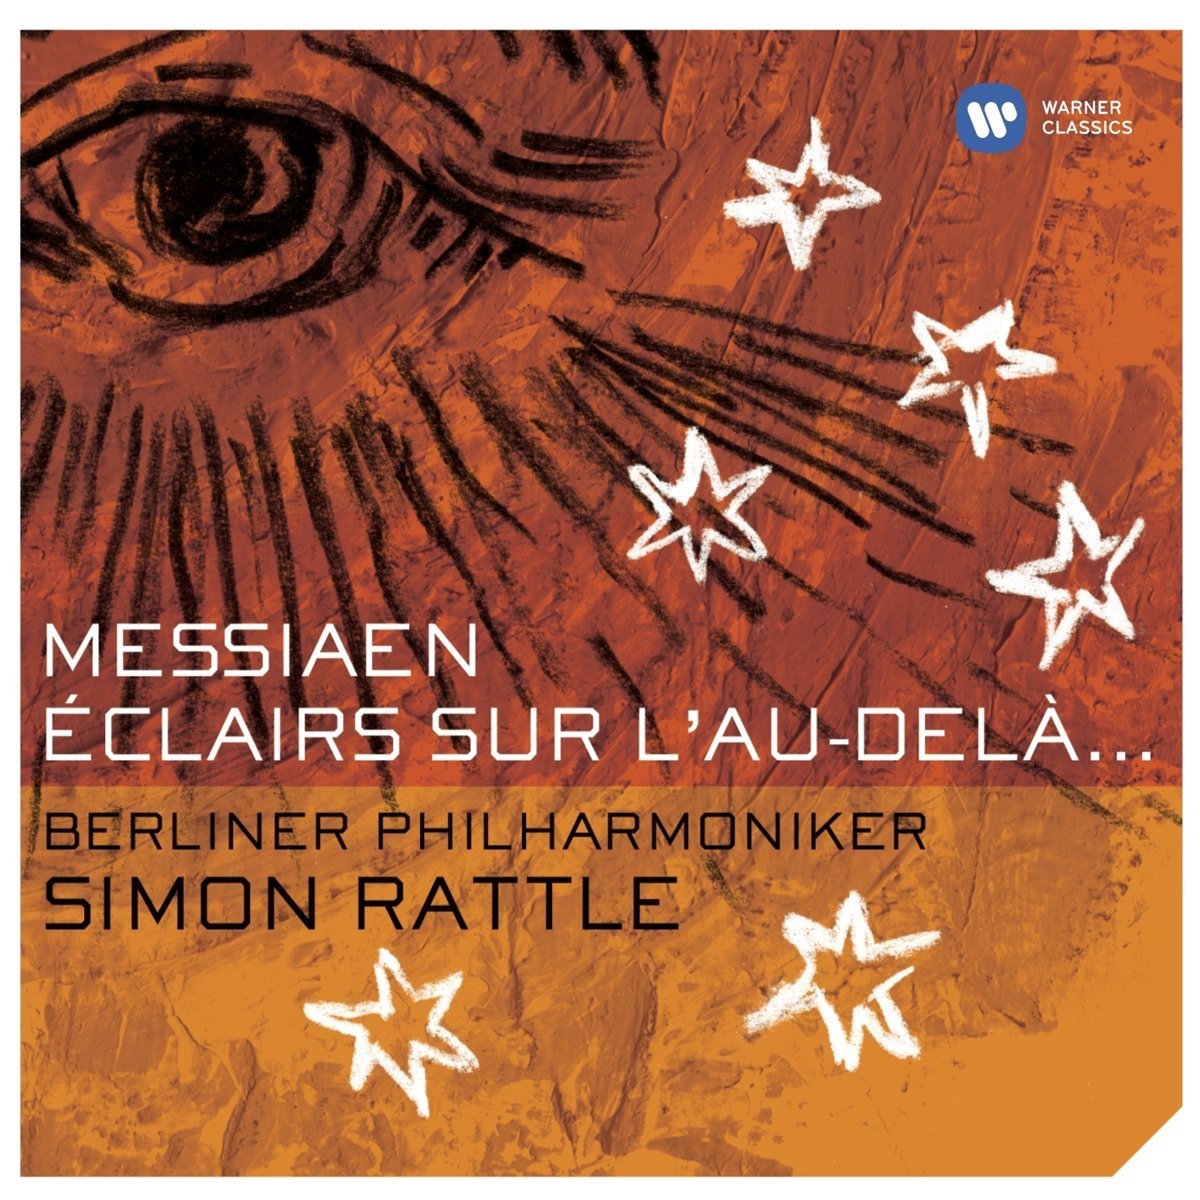 Berliner Philharmoniker, Simon Rattle - Messiaen: Eclairs sur l’au-del… (2004) [HDTracks FLAC 24bit/44,1kHz]